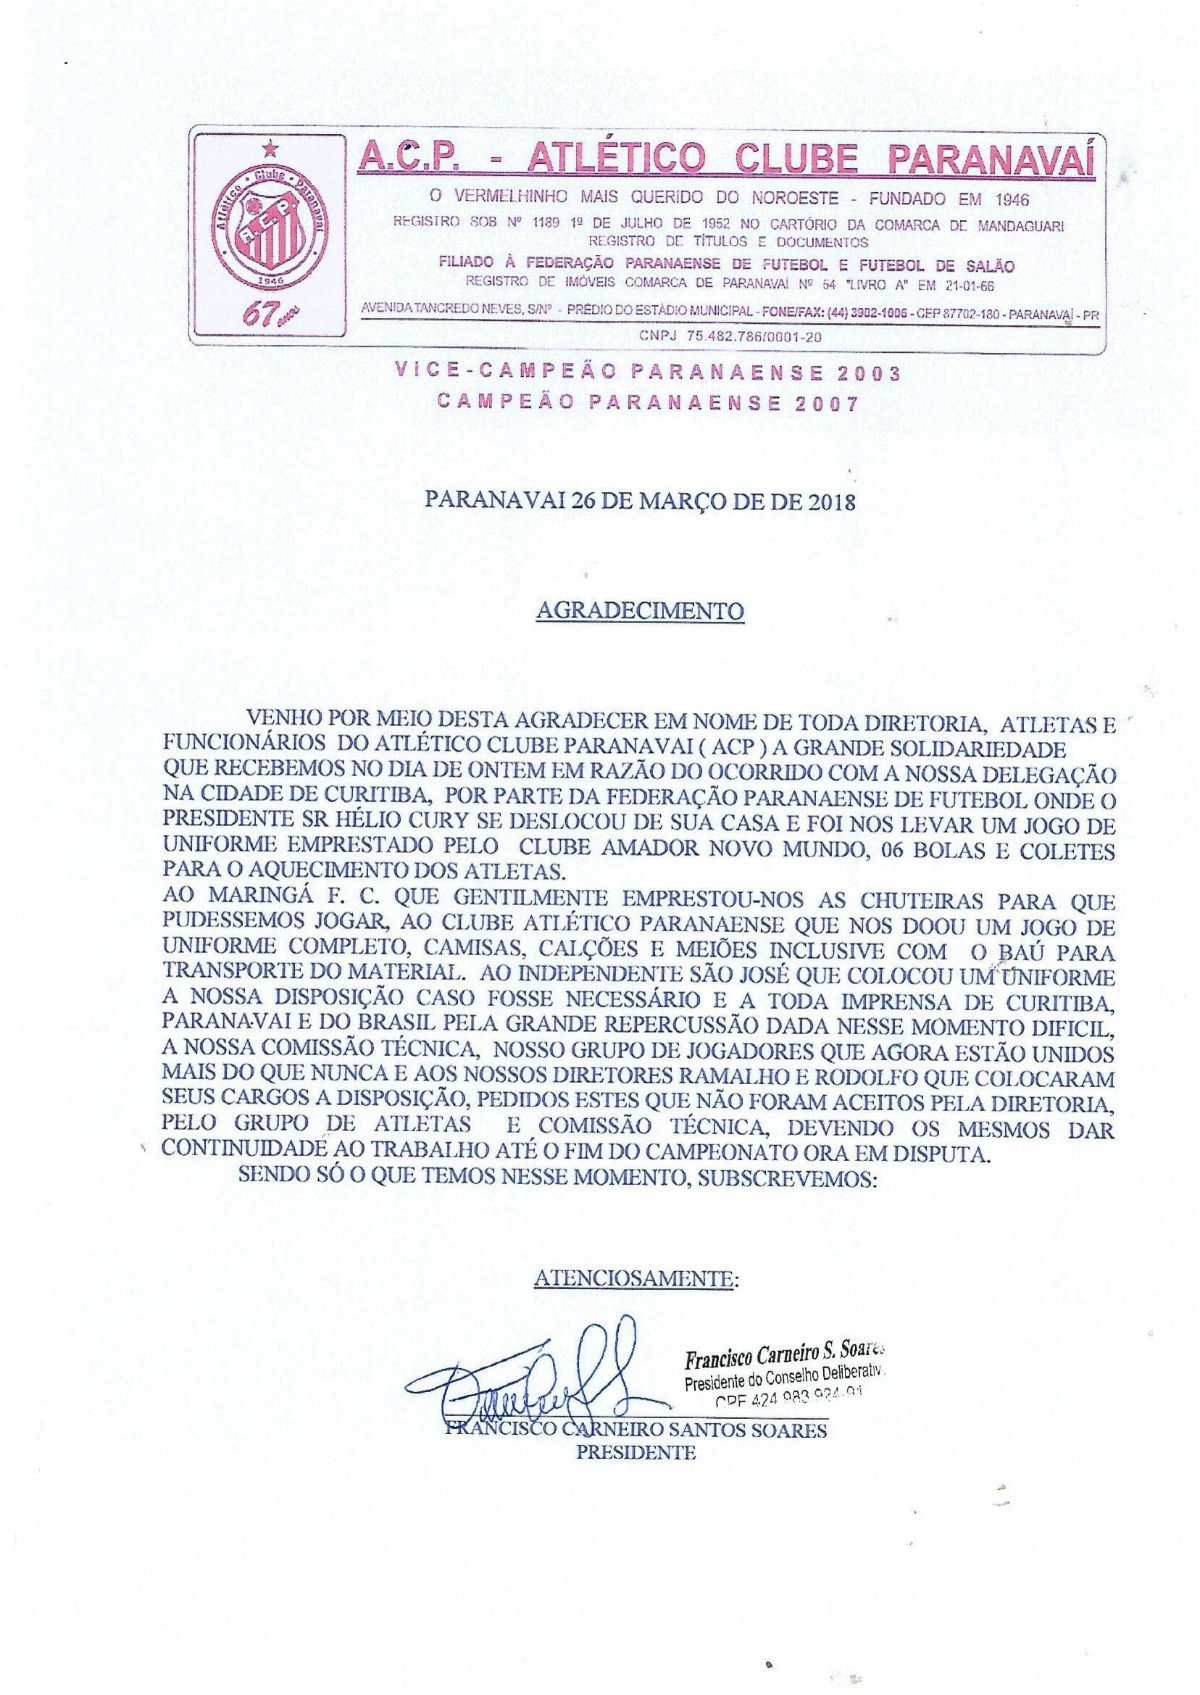 Presidente do ACP divulgou carta de agradecimento ao apoio do Atlético e do Maringá. Foto: Reprodução